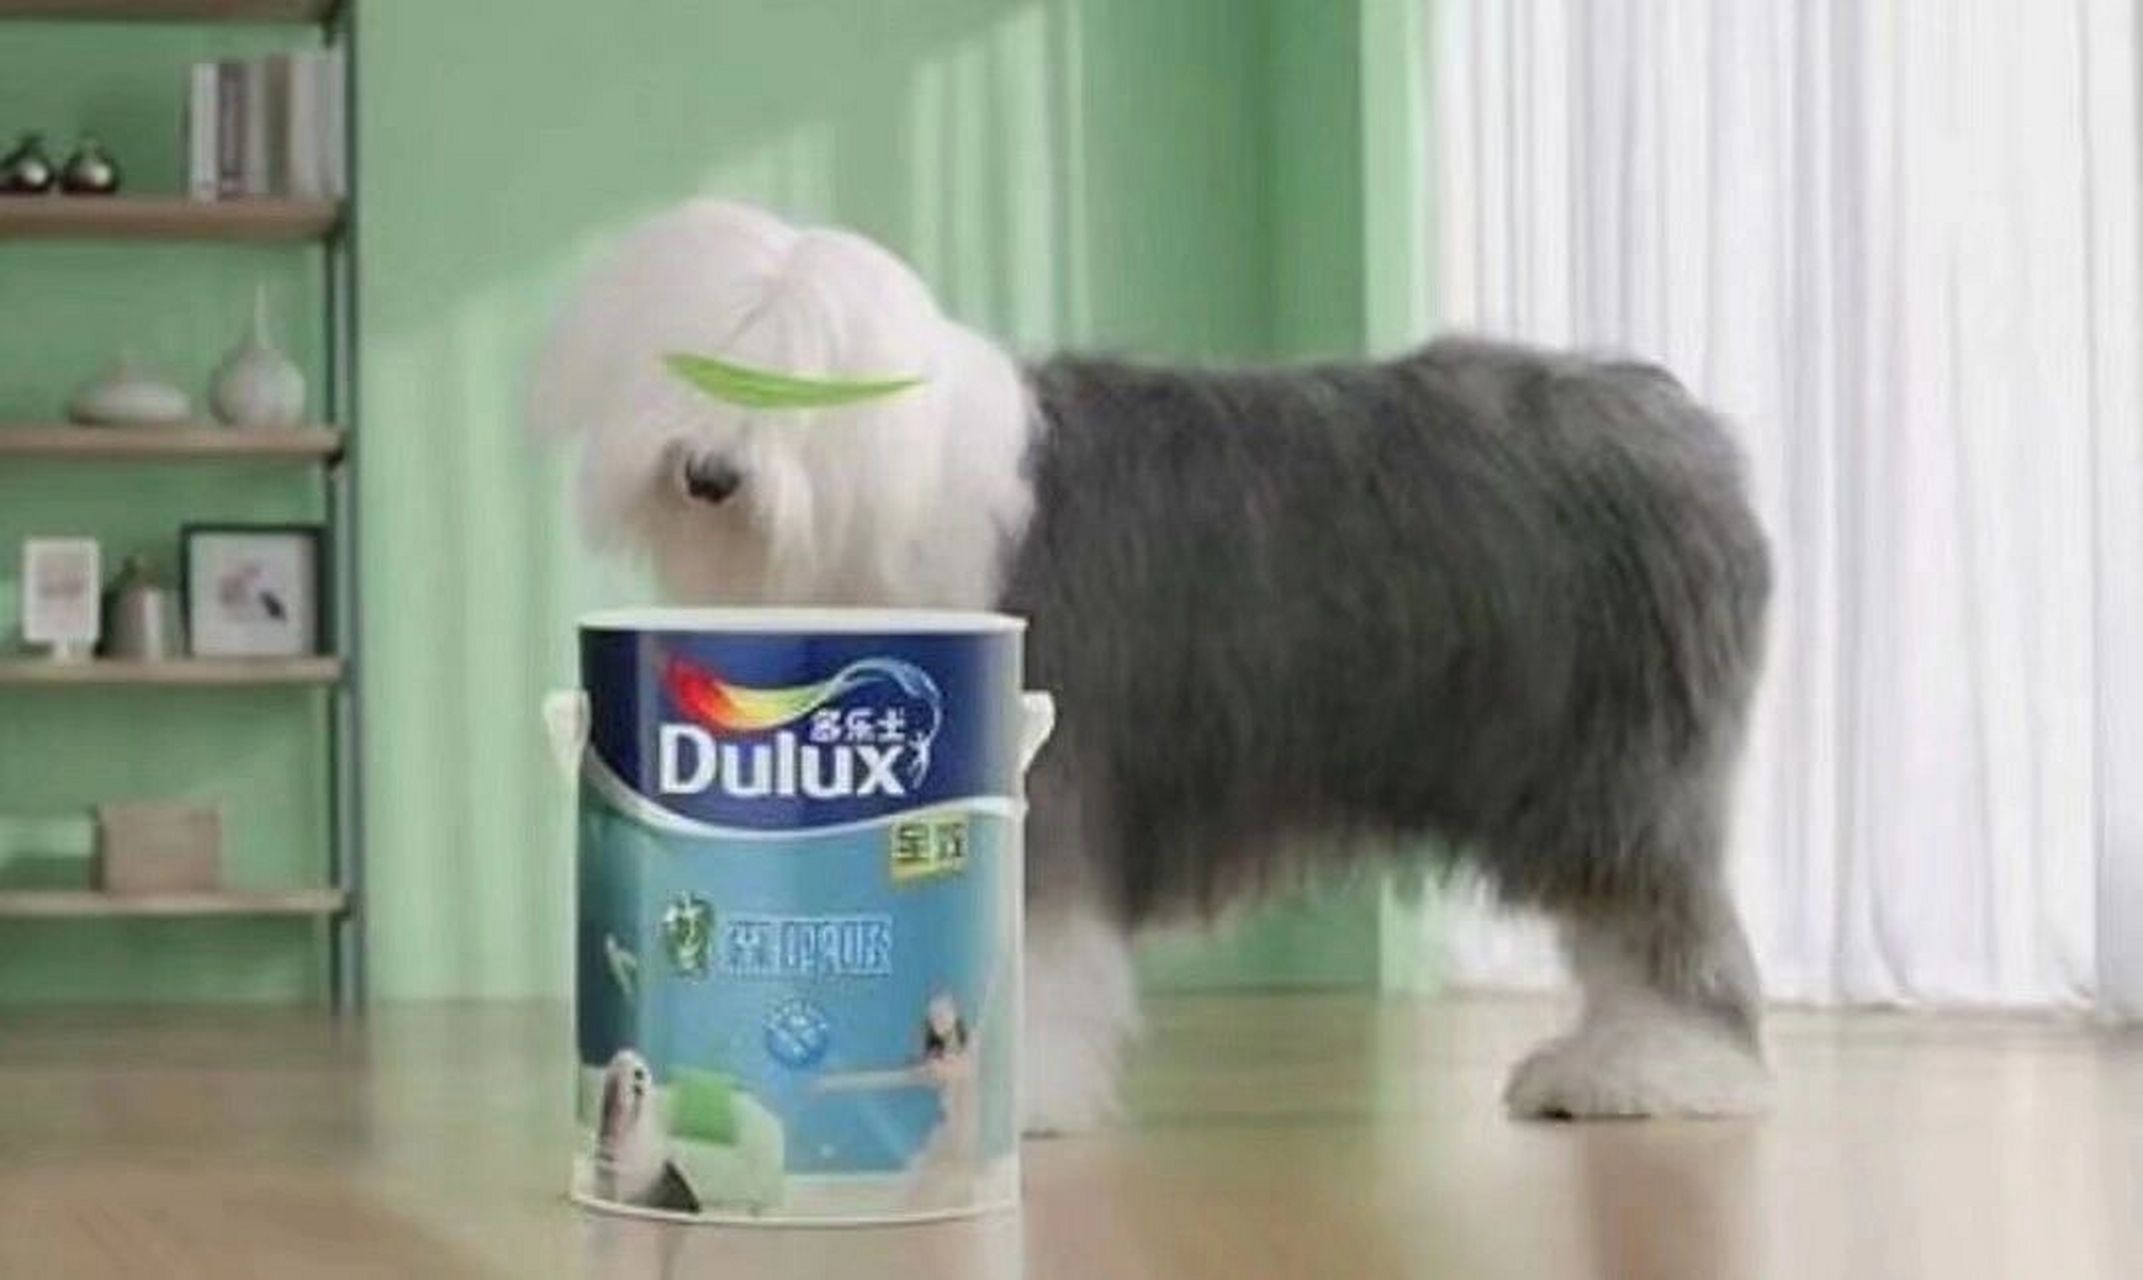 多乐士漆广告的那只狗图片